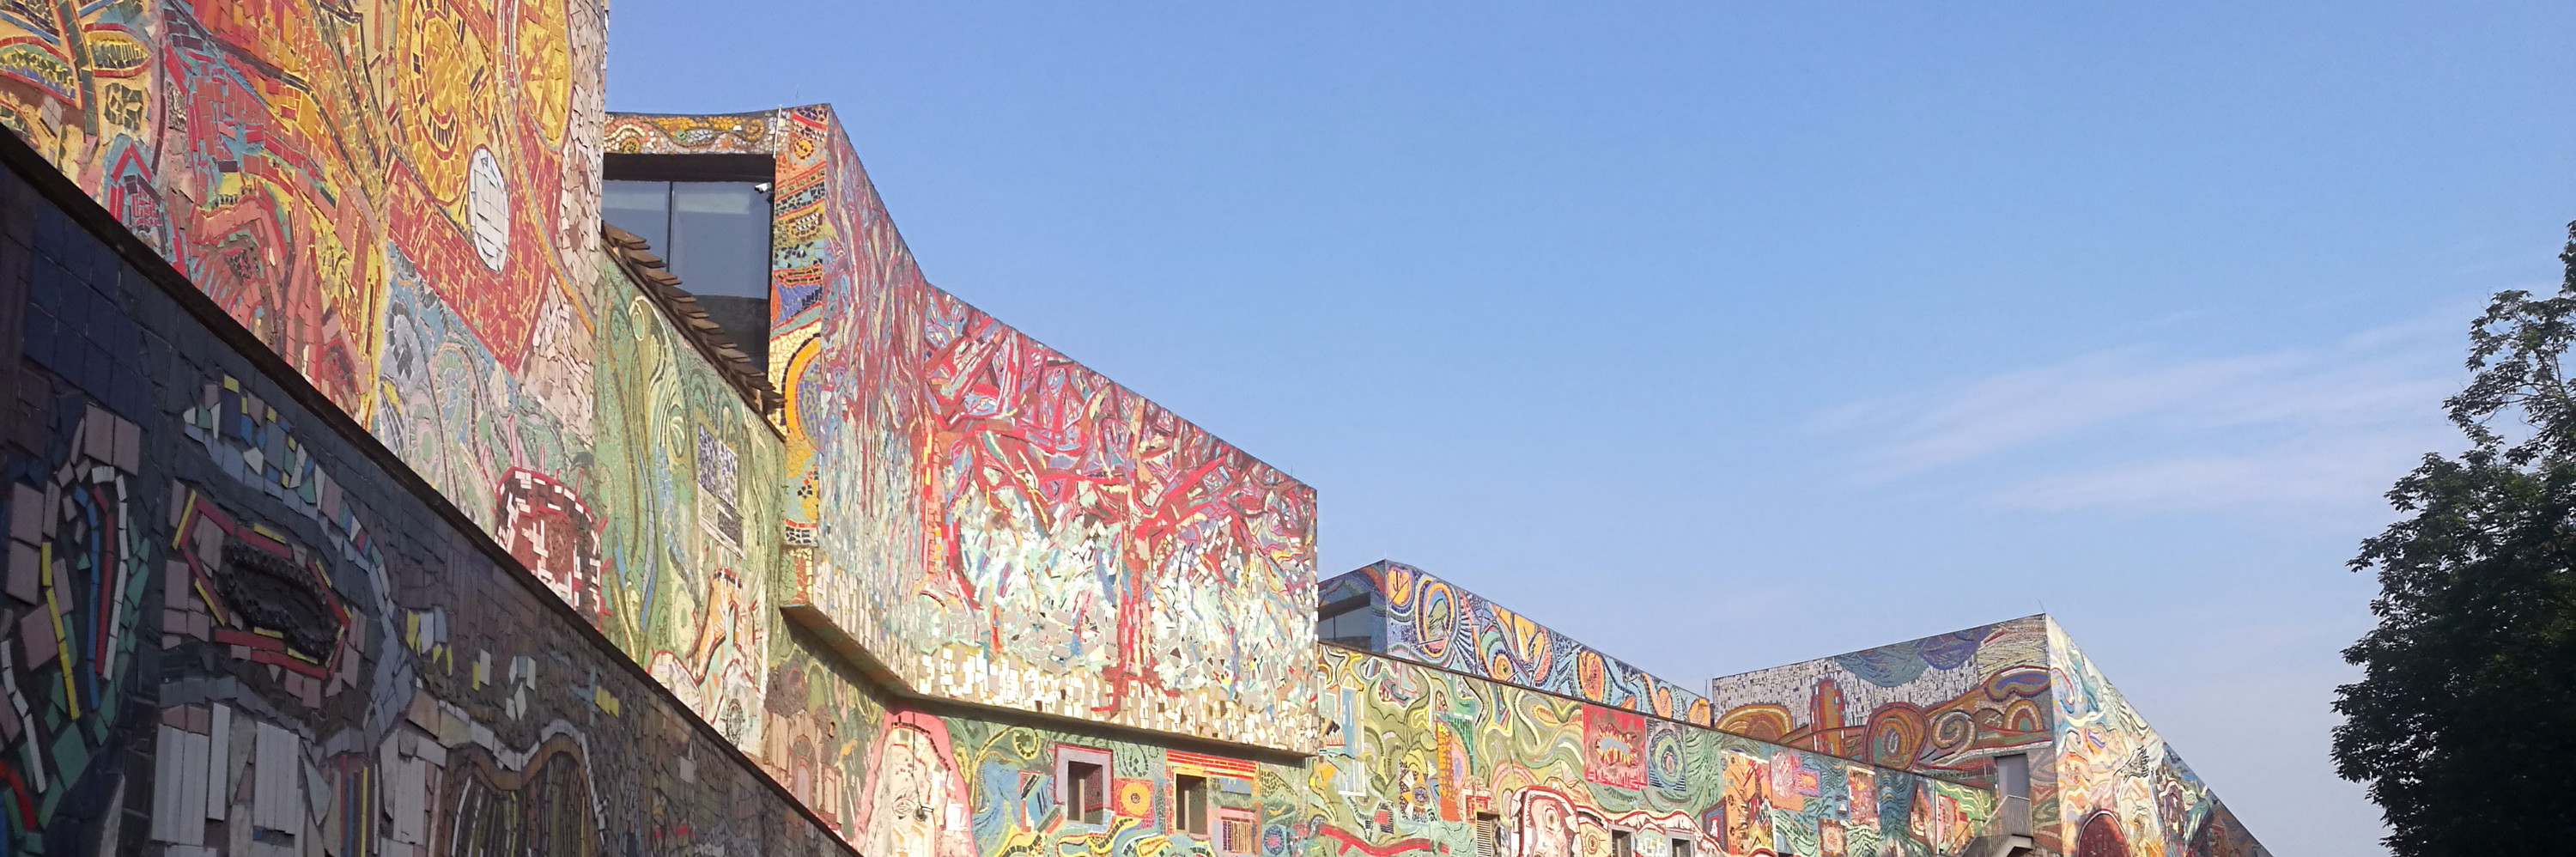 川美涂鸦墙,是我重庆之旅的最爱